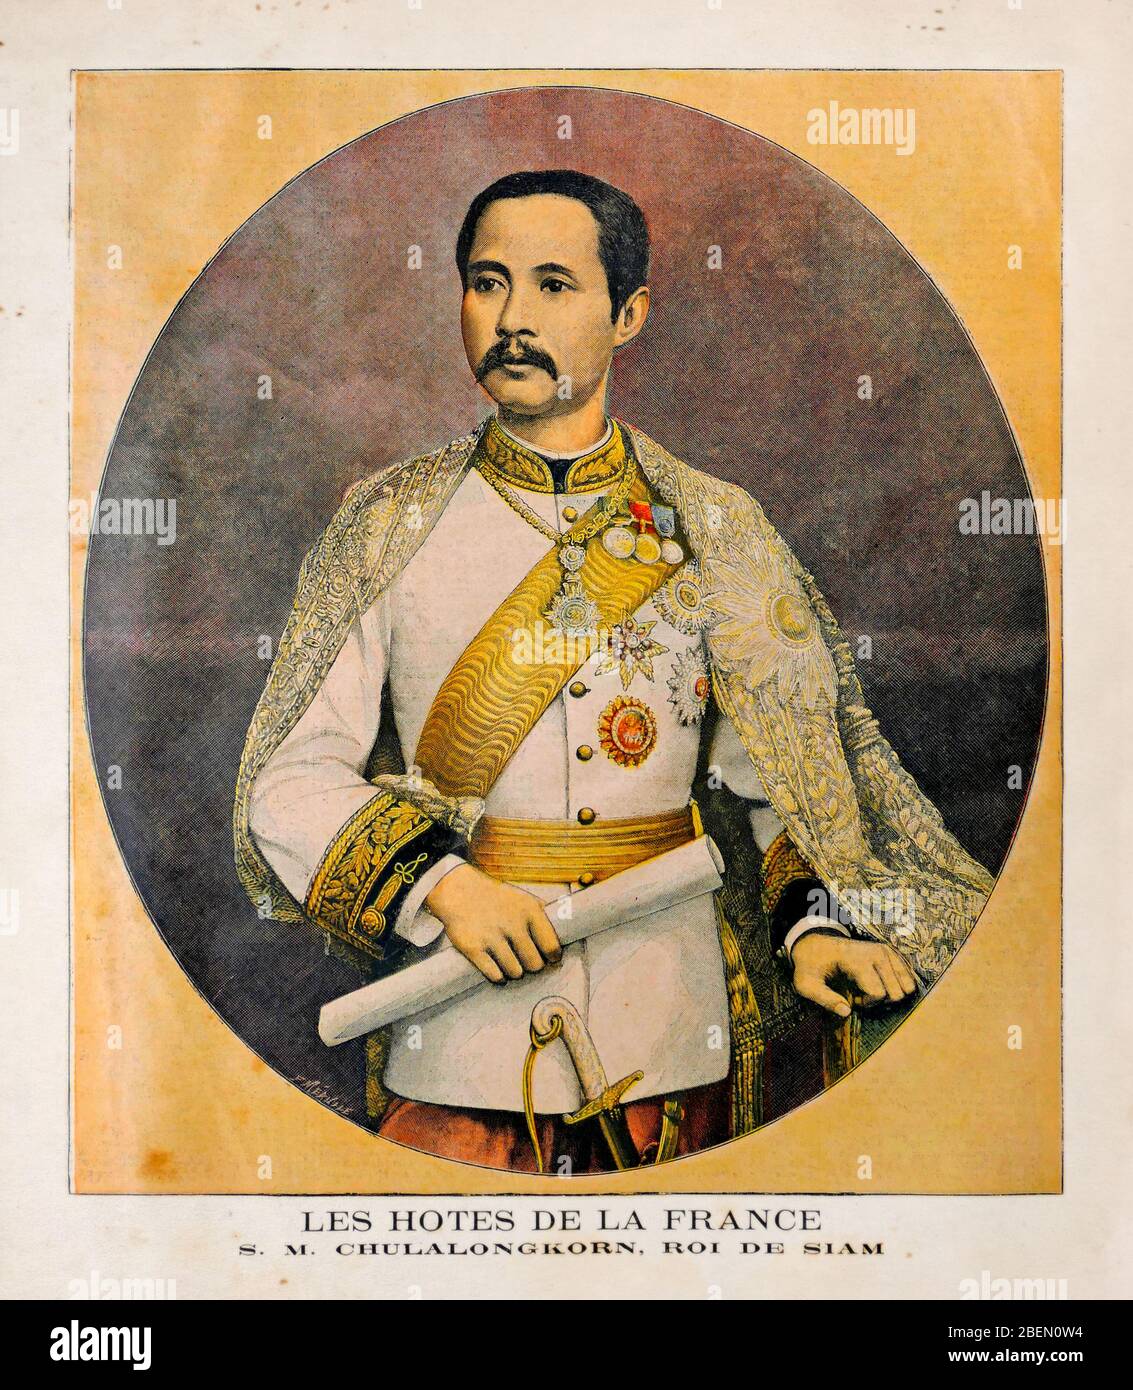 Vecchia illustrazione sul Re di Siam Chulalongkorn (Rama V) Visita Parigi di Louis-Fortuné Méaulle pubblicato il 19 settembre 1897 nel quotidiano Foto Stock